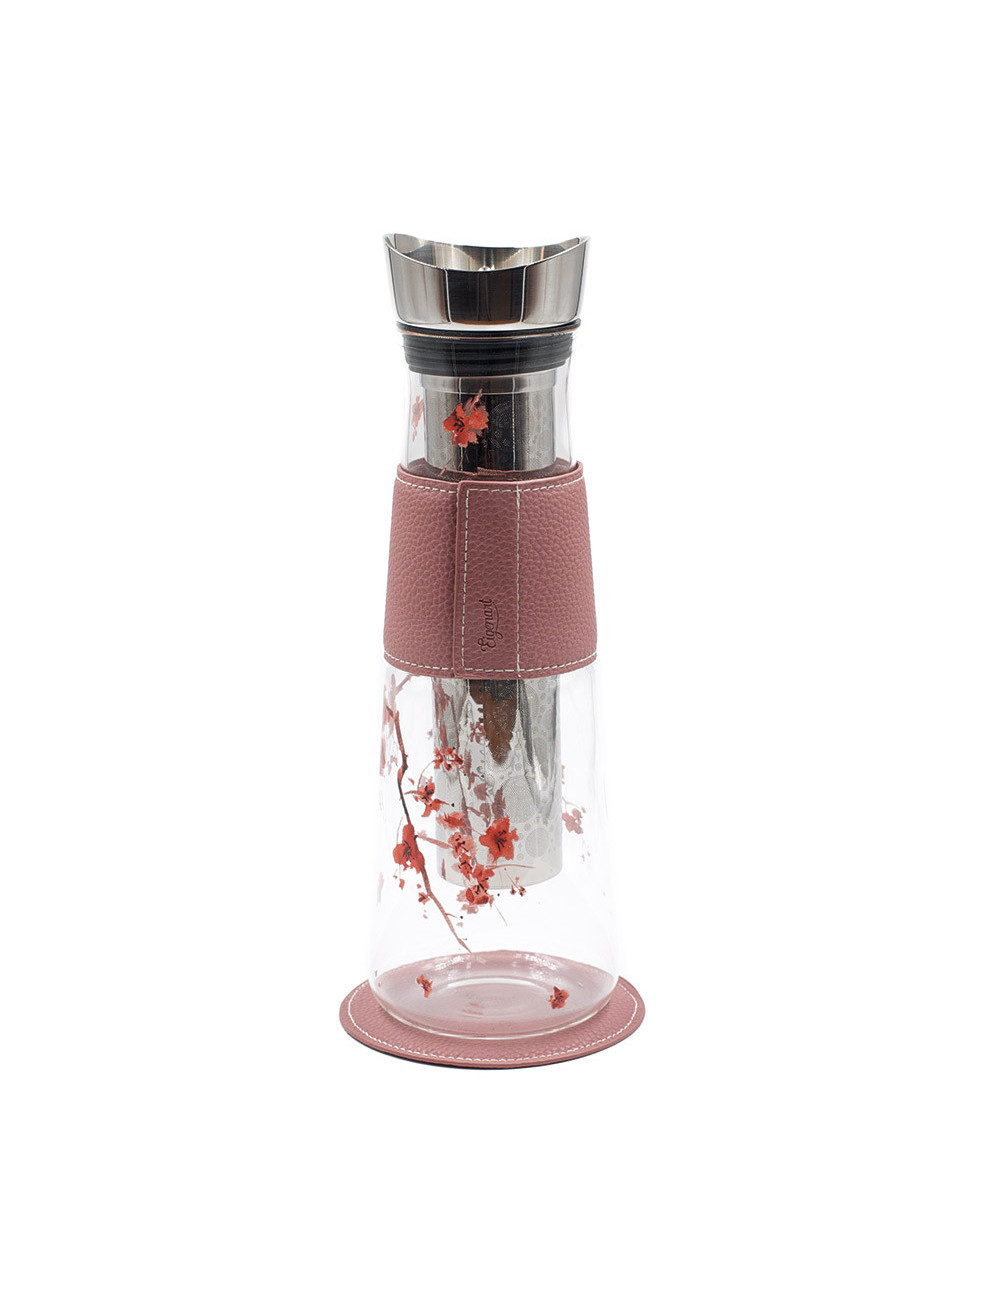 Caraffa per il tè in vetro con fiori di ciliegio e pelle rosa - La Pianta del Tè shop online